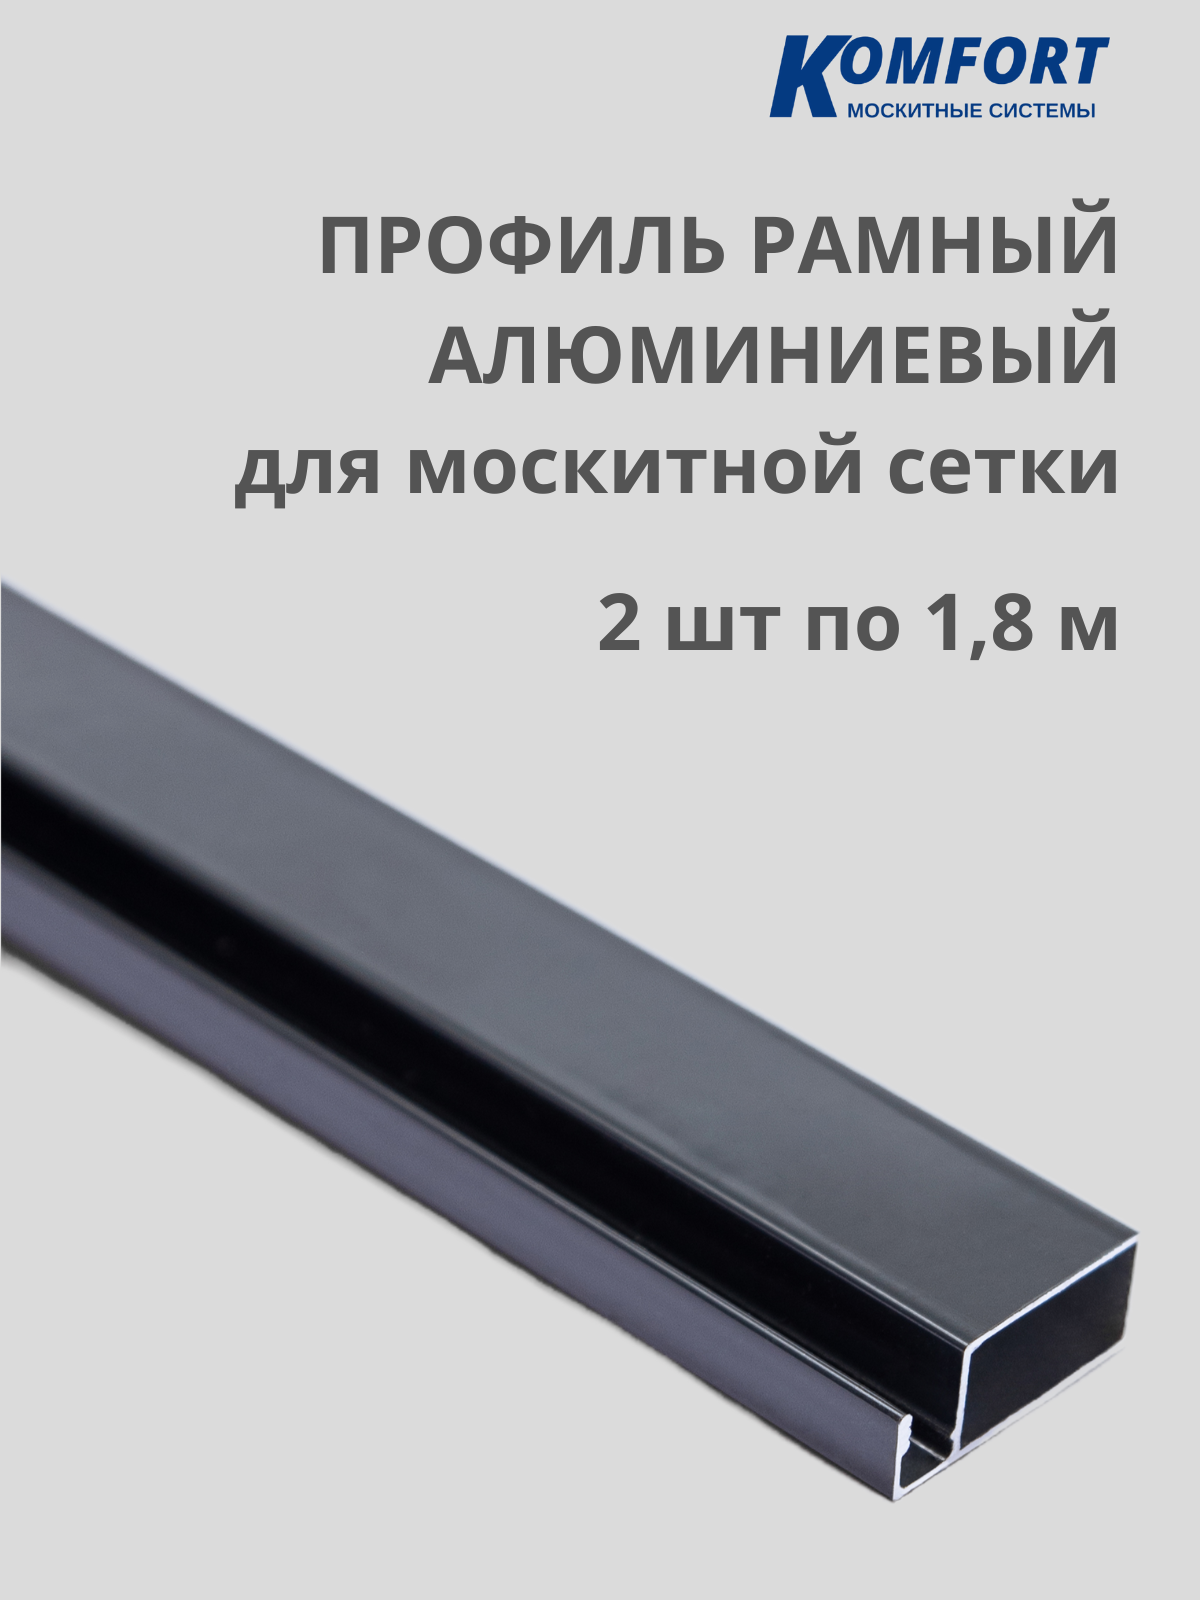 Профиль для москитной сетки рамный алюминиевый серый 1,8 м 2 шт